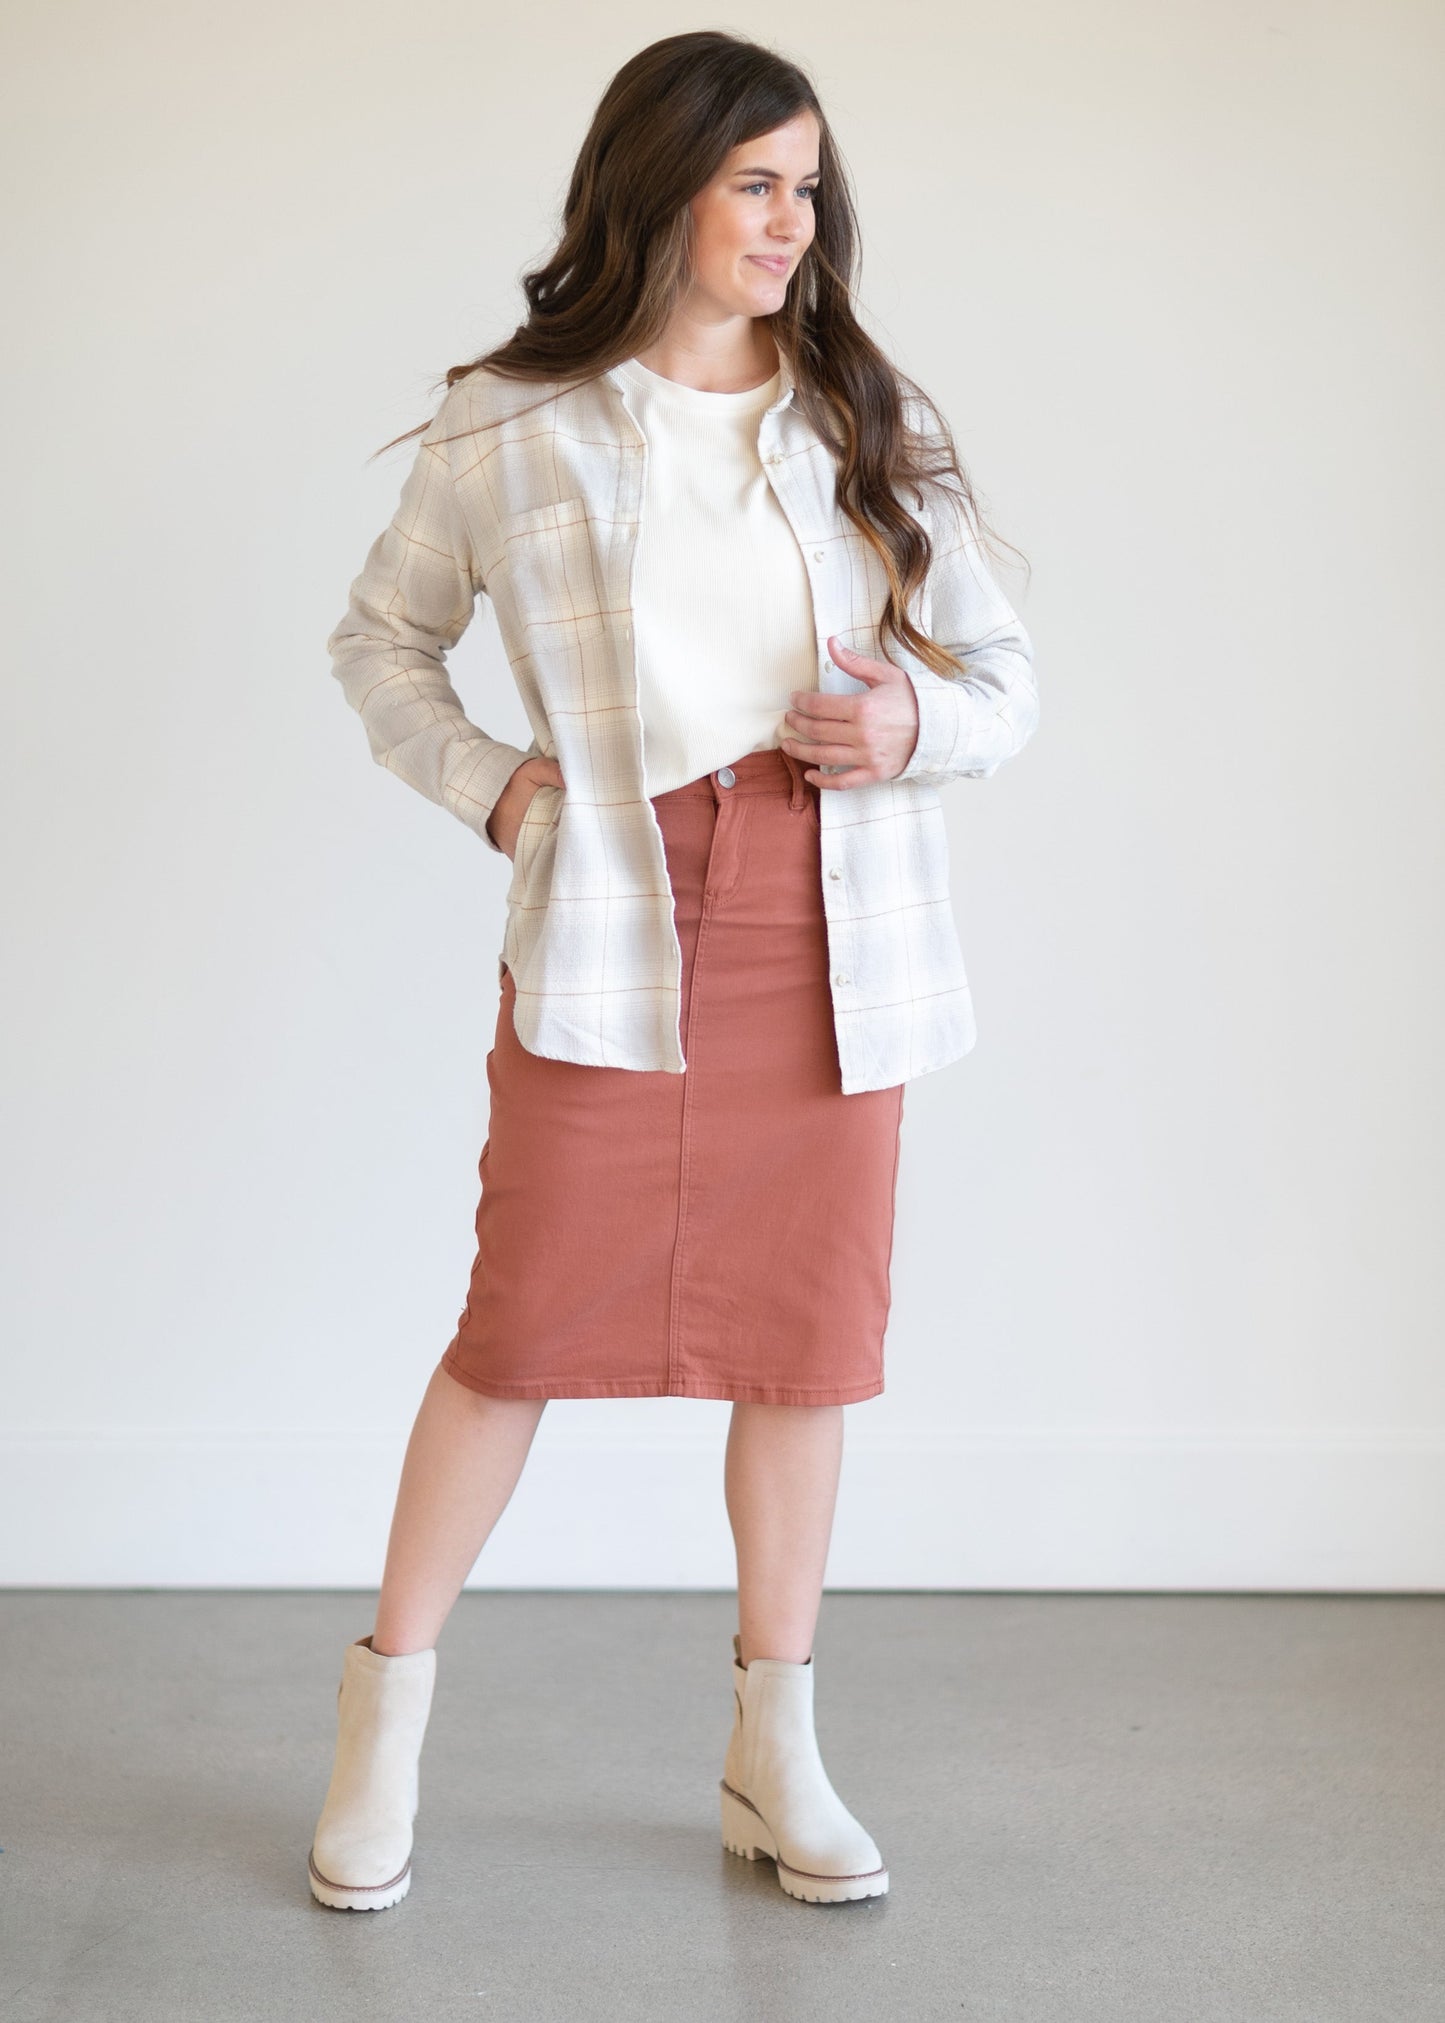 Remi Rusty Brick Denim Midi Skirt - FINAL SALE Skirts